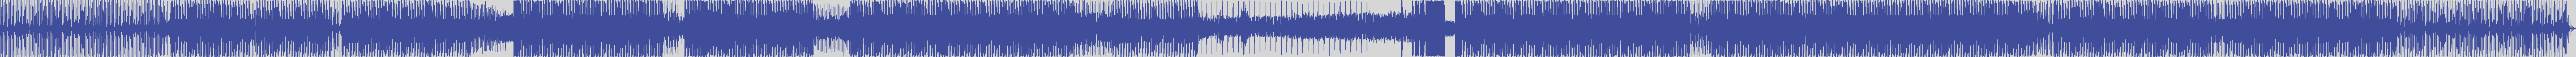 nonstop_one [NSO008] Ninho, Soundcraft - Contemporary Aside [Original Mix] audio wave form